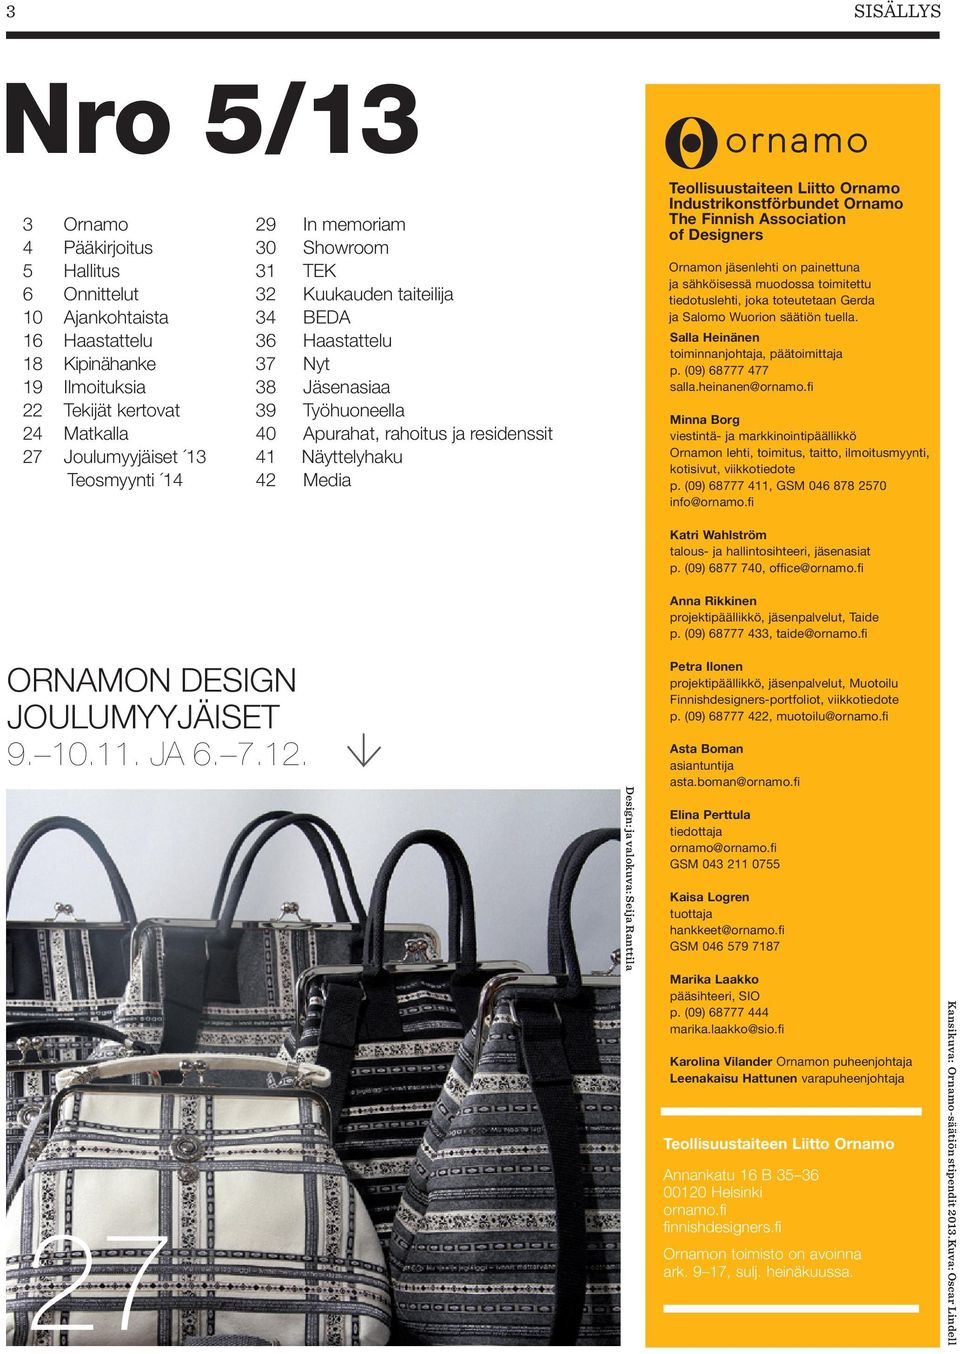 Liitto Ornamo Industrikonstförbundet Ornamo The Finnish Association of Designers Ornamon jäsenlehti on painettuna ja sähköisessä muodossa toimitettu tiedotuslehti, joka toteutetaan Gerda ja Salomo